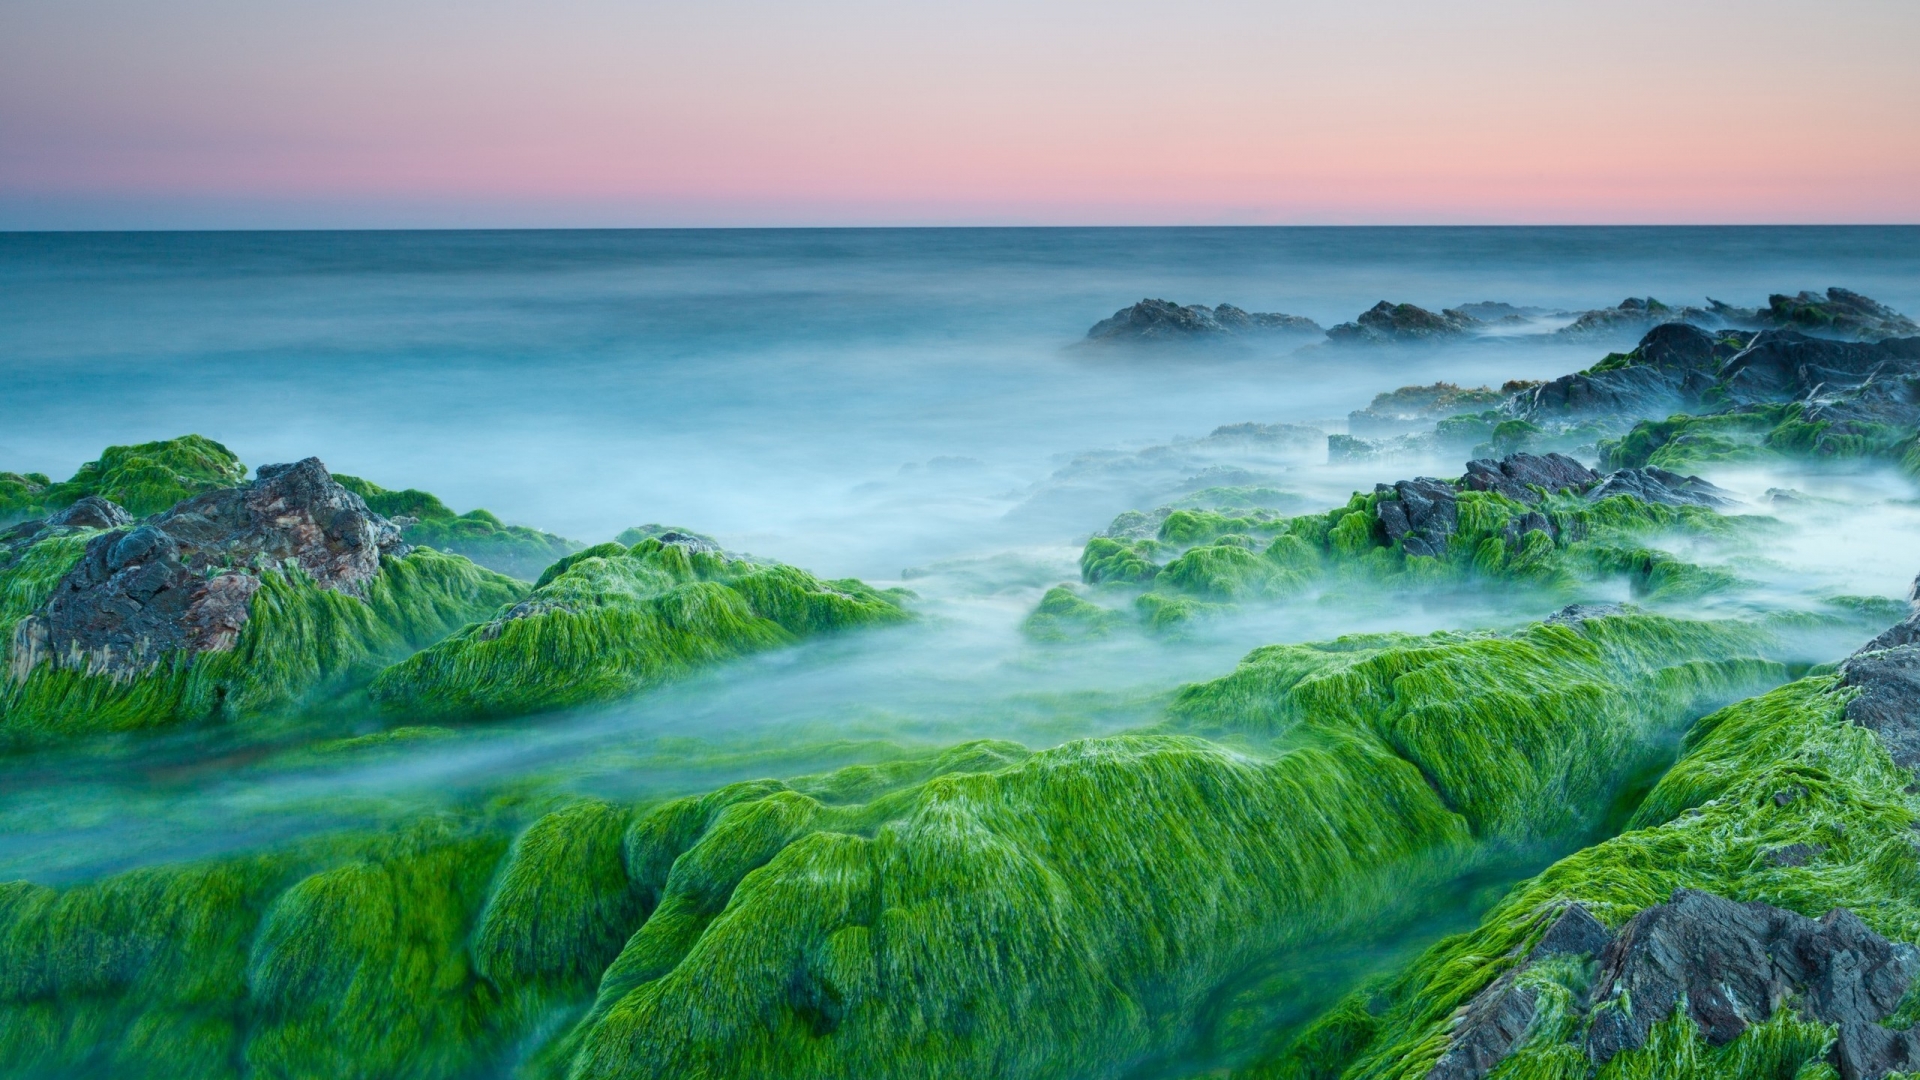 Green Algae On Rocks for 1920 x 1080 HDTV 1080p resolution